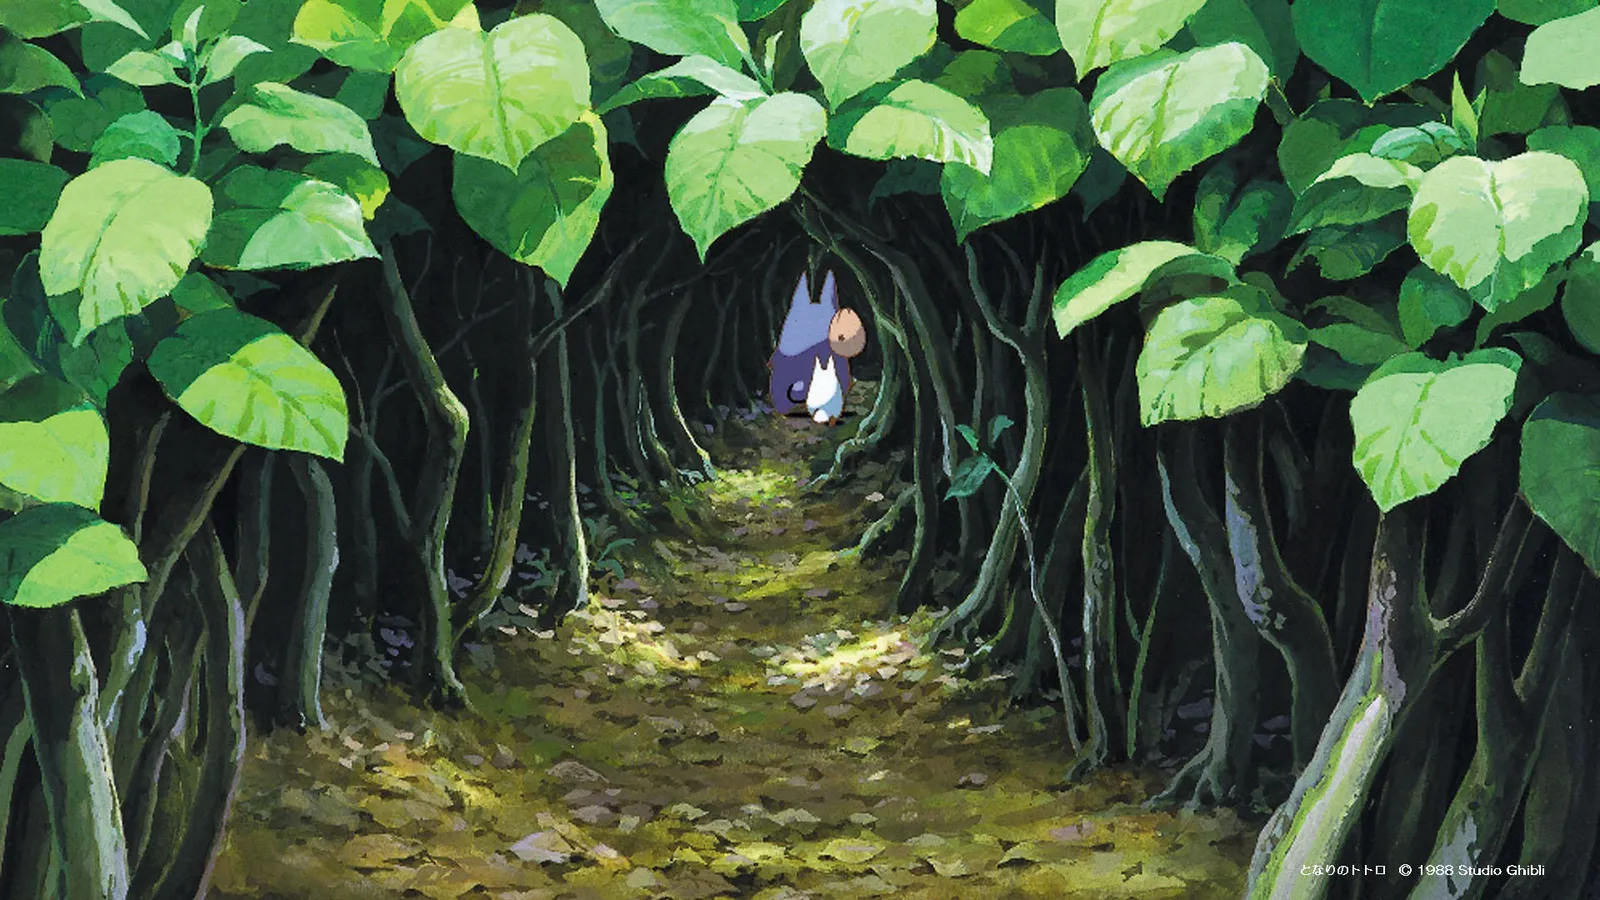 Meriahkan Belajar di Rumah, Studio Ghibli Rilis 12 Wallpaper Gratis